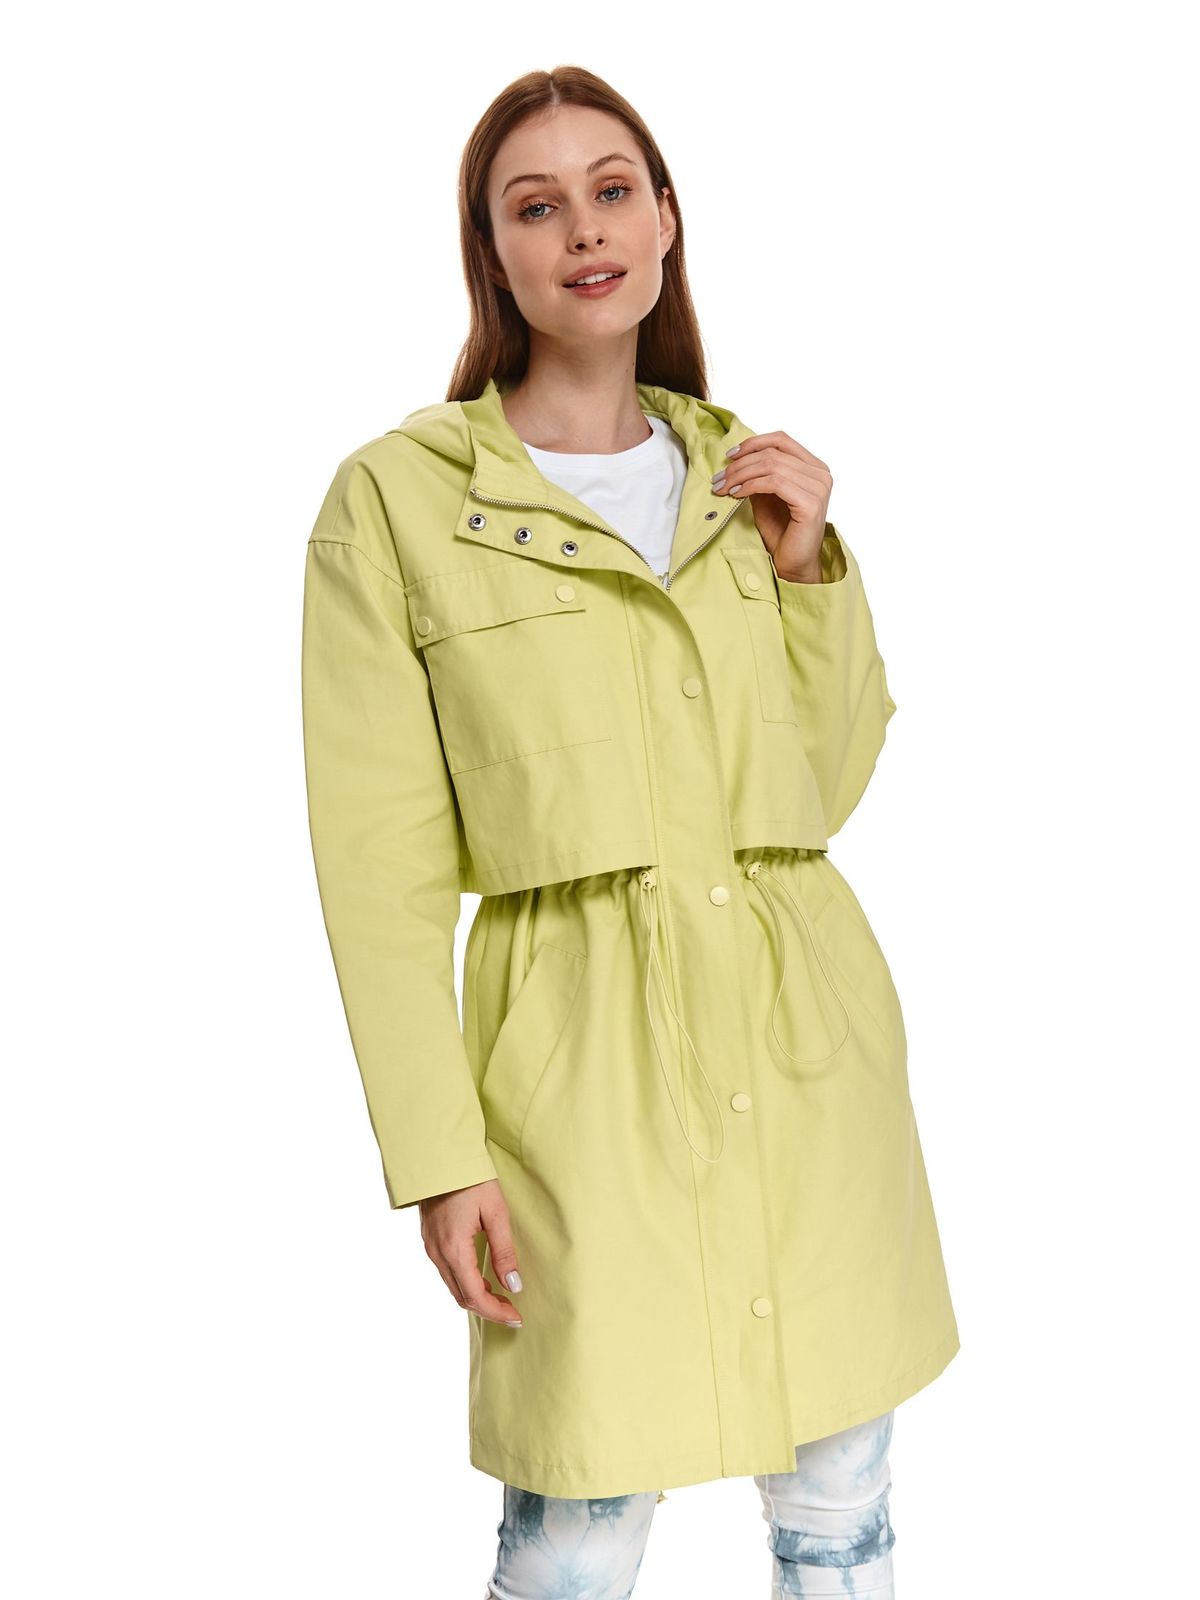 Lightgreen jacket from slicker midi straight